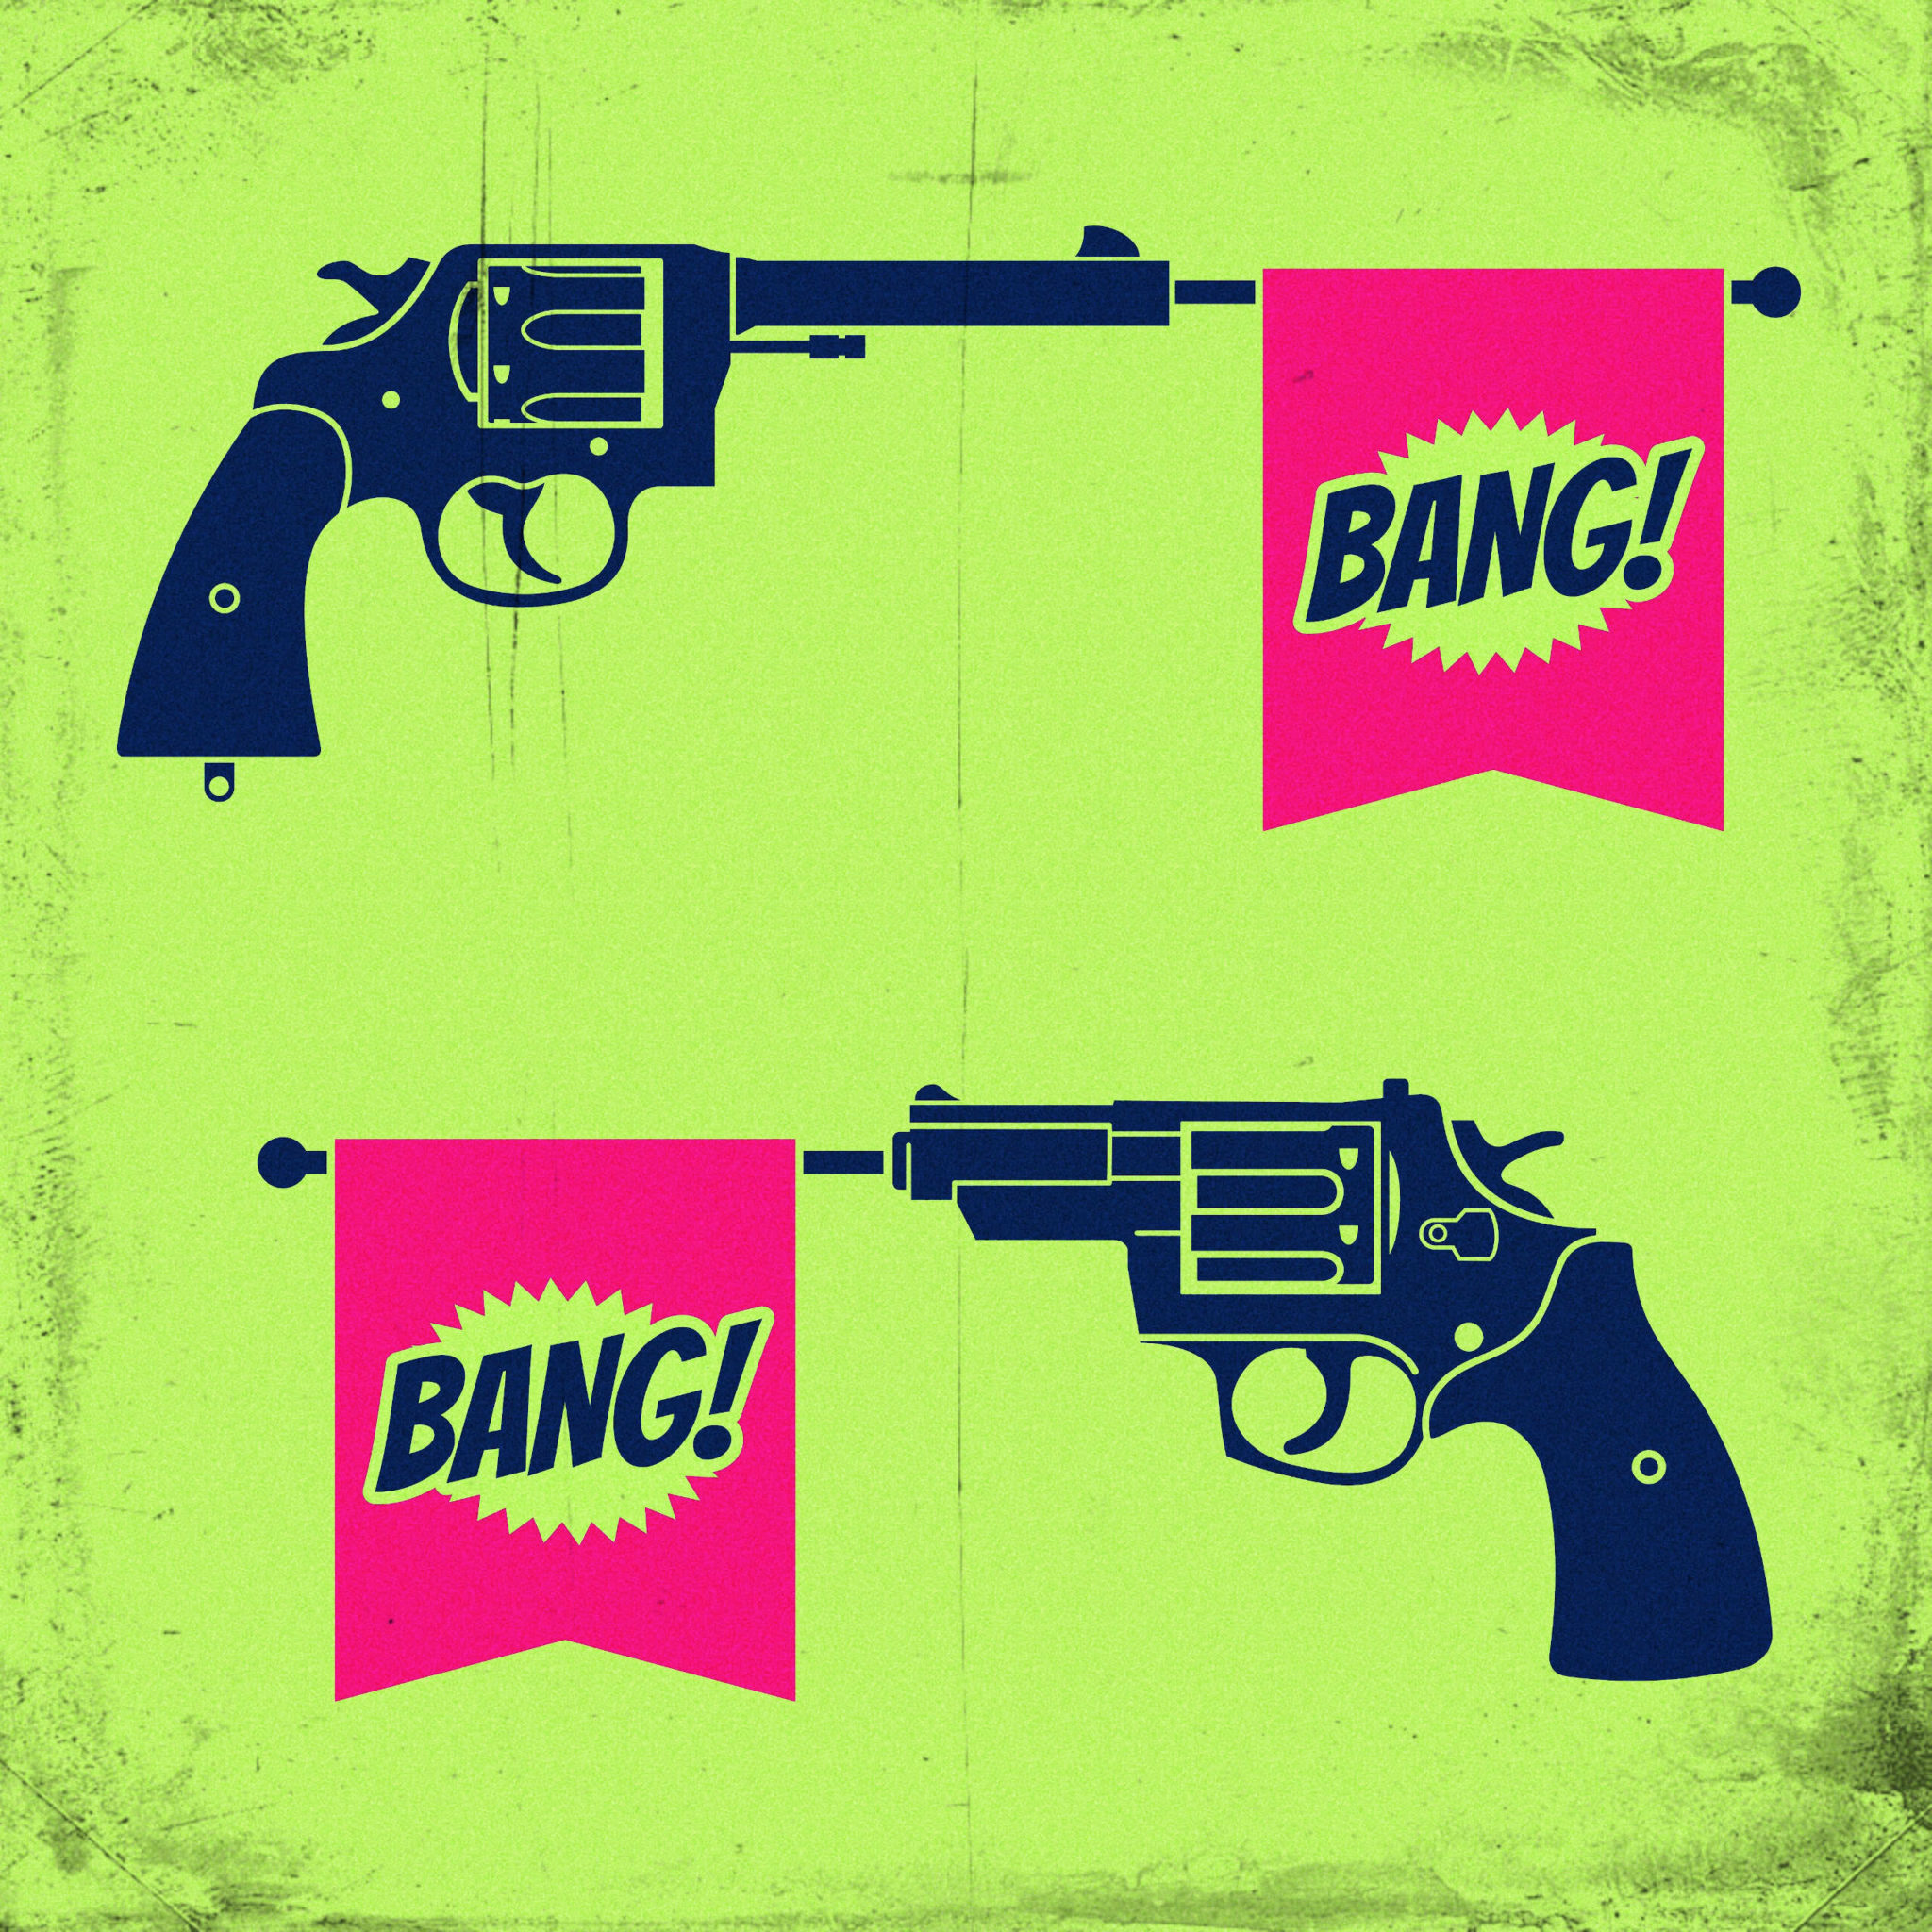 Bang bang face. Bang. Надпись Bang Bang. Ban ban. Иллюстрации Bang Bang.